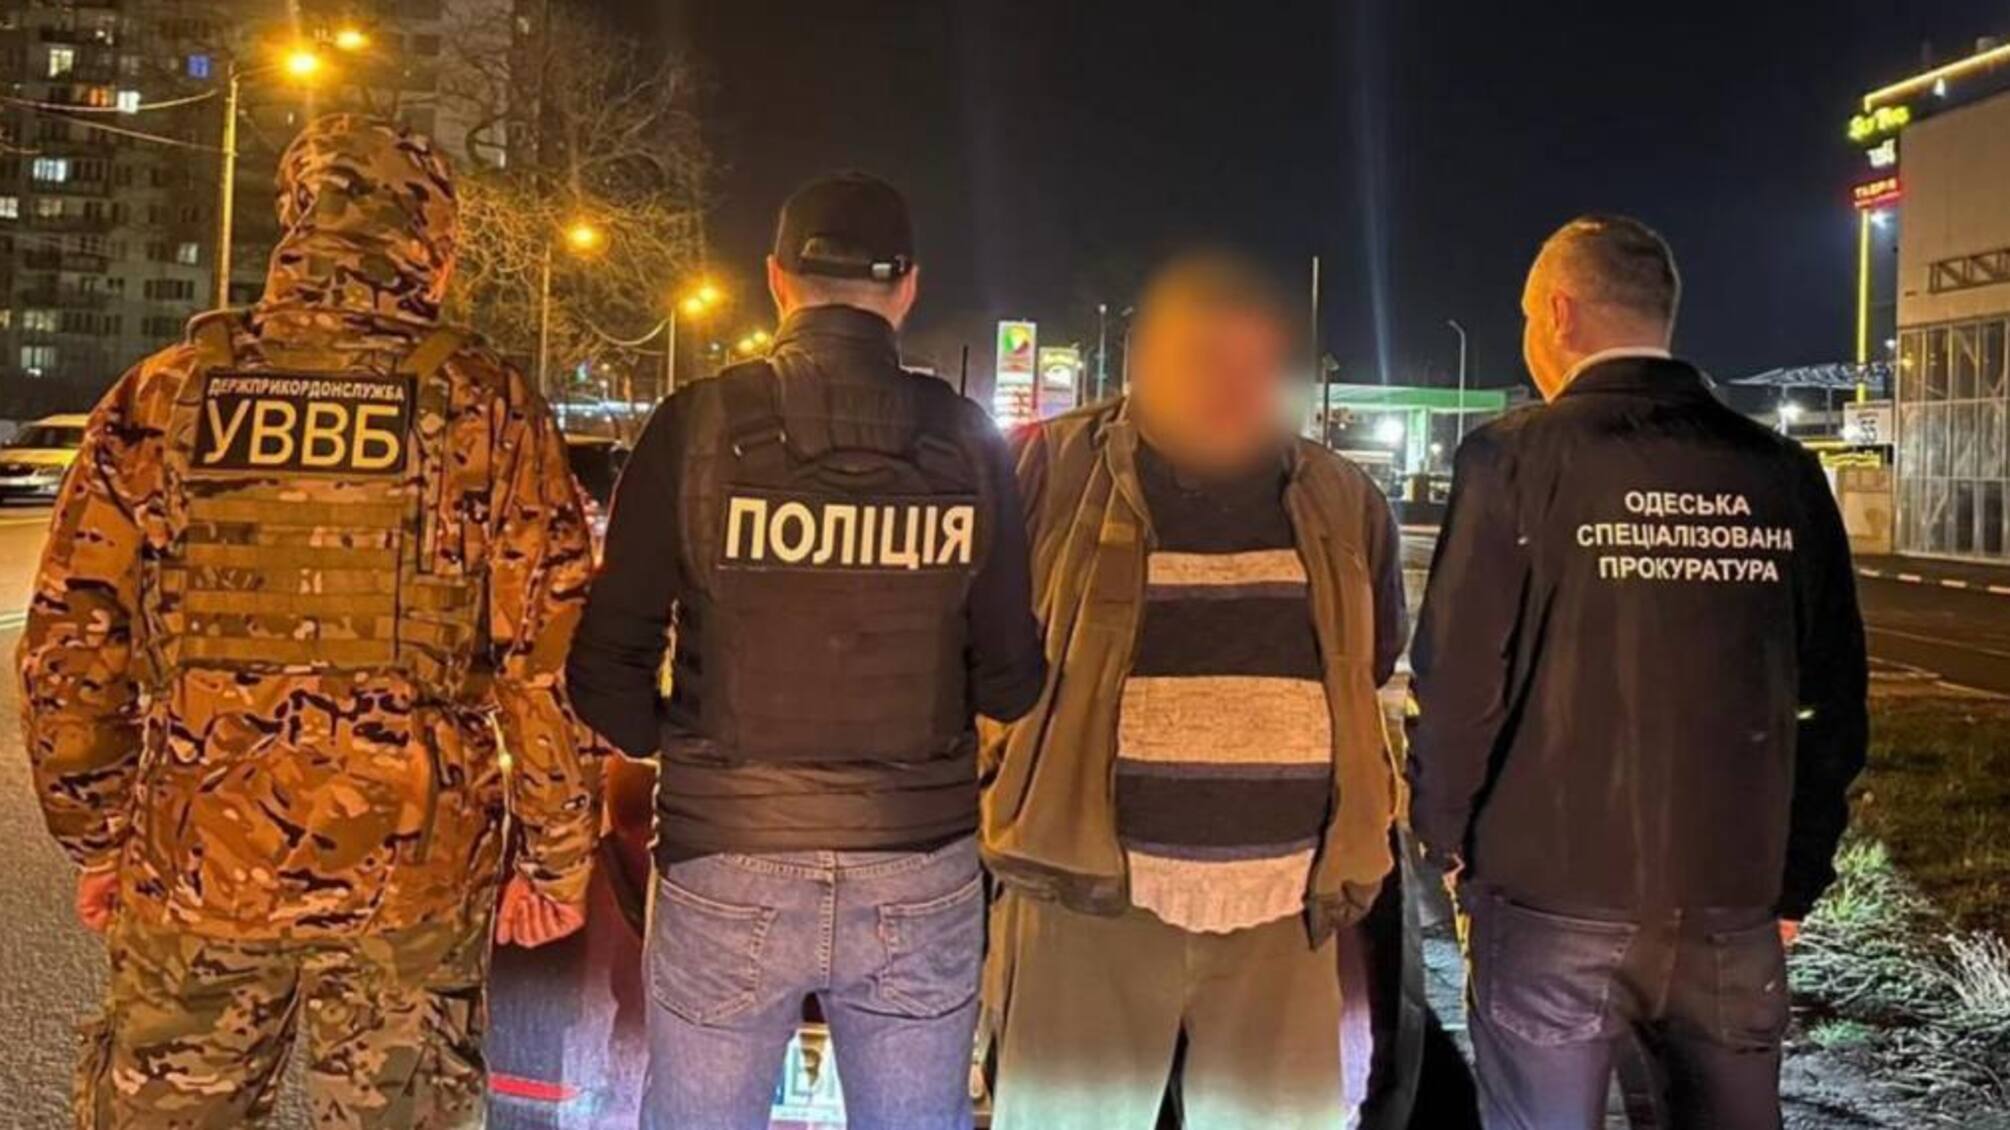 4,5 тыс. долларов за 'освобождение от службы': в Одесской области задержали торговца фальшивыми документами